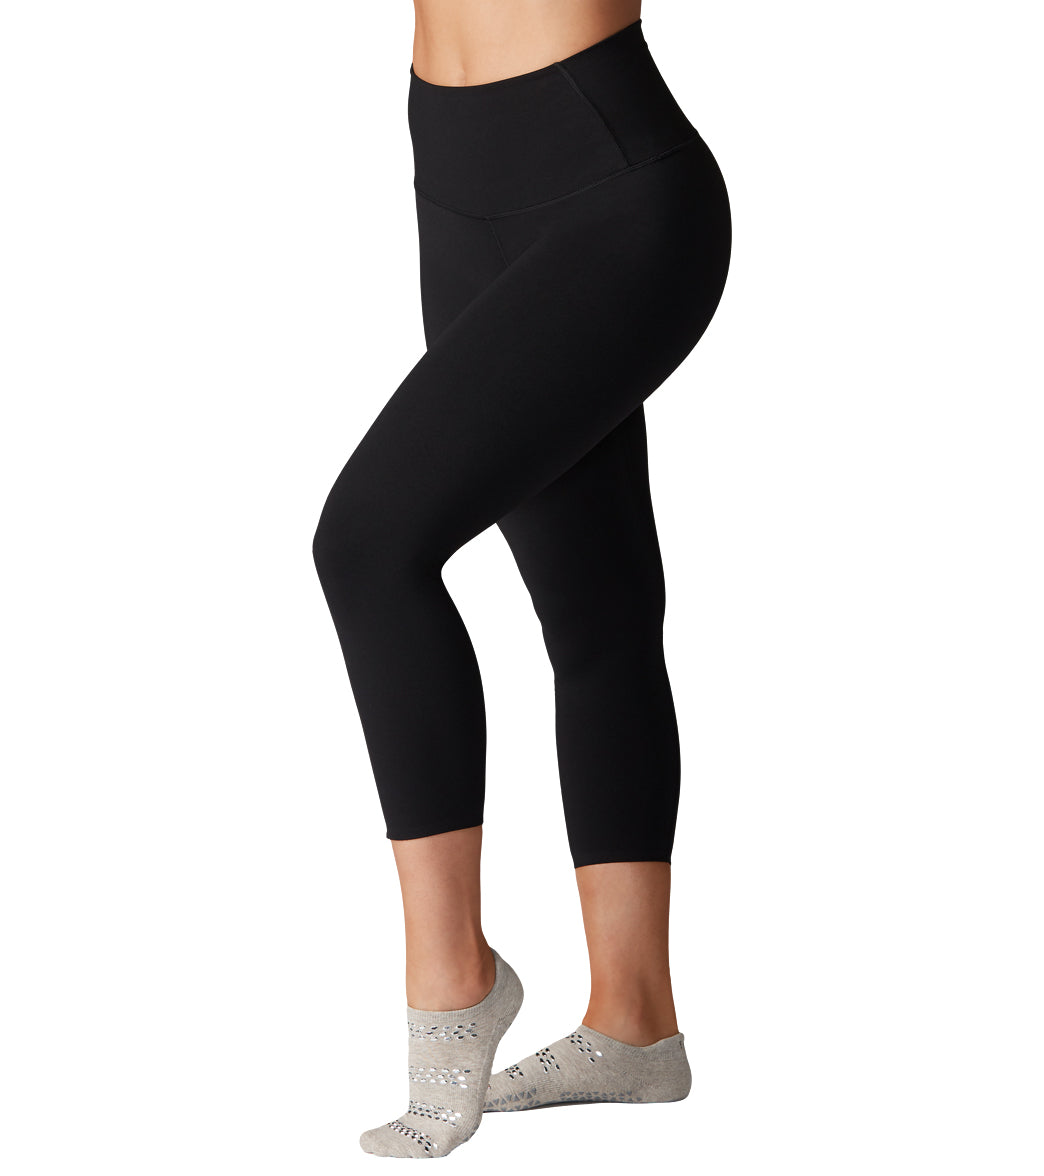 HOFI, Pants & Jumpsuits, Hofi High Waisted Yoga Pants For Women Tummy  Control Yoga Leggings With Pockets